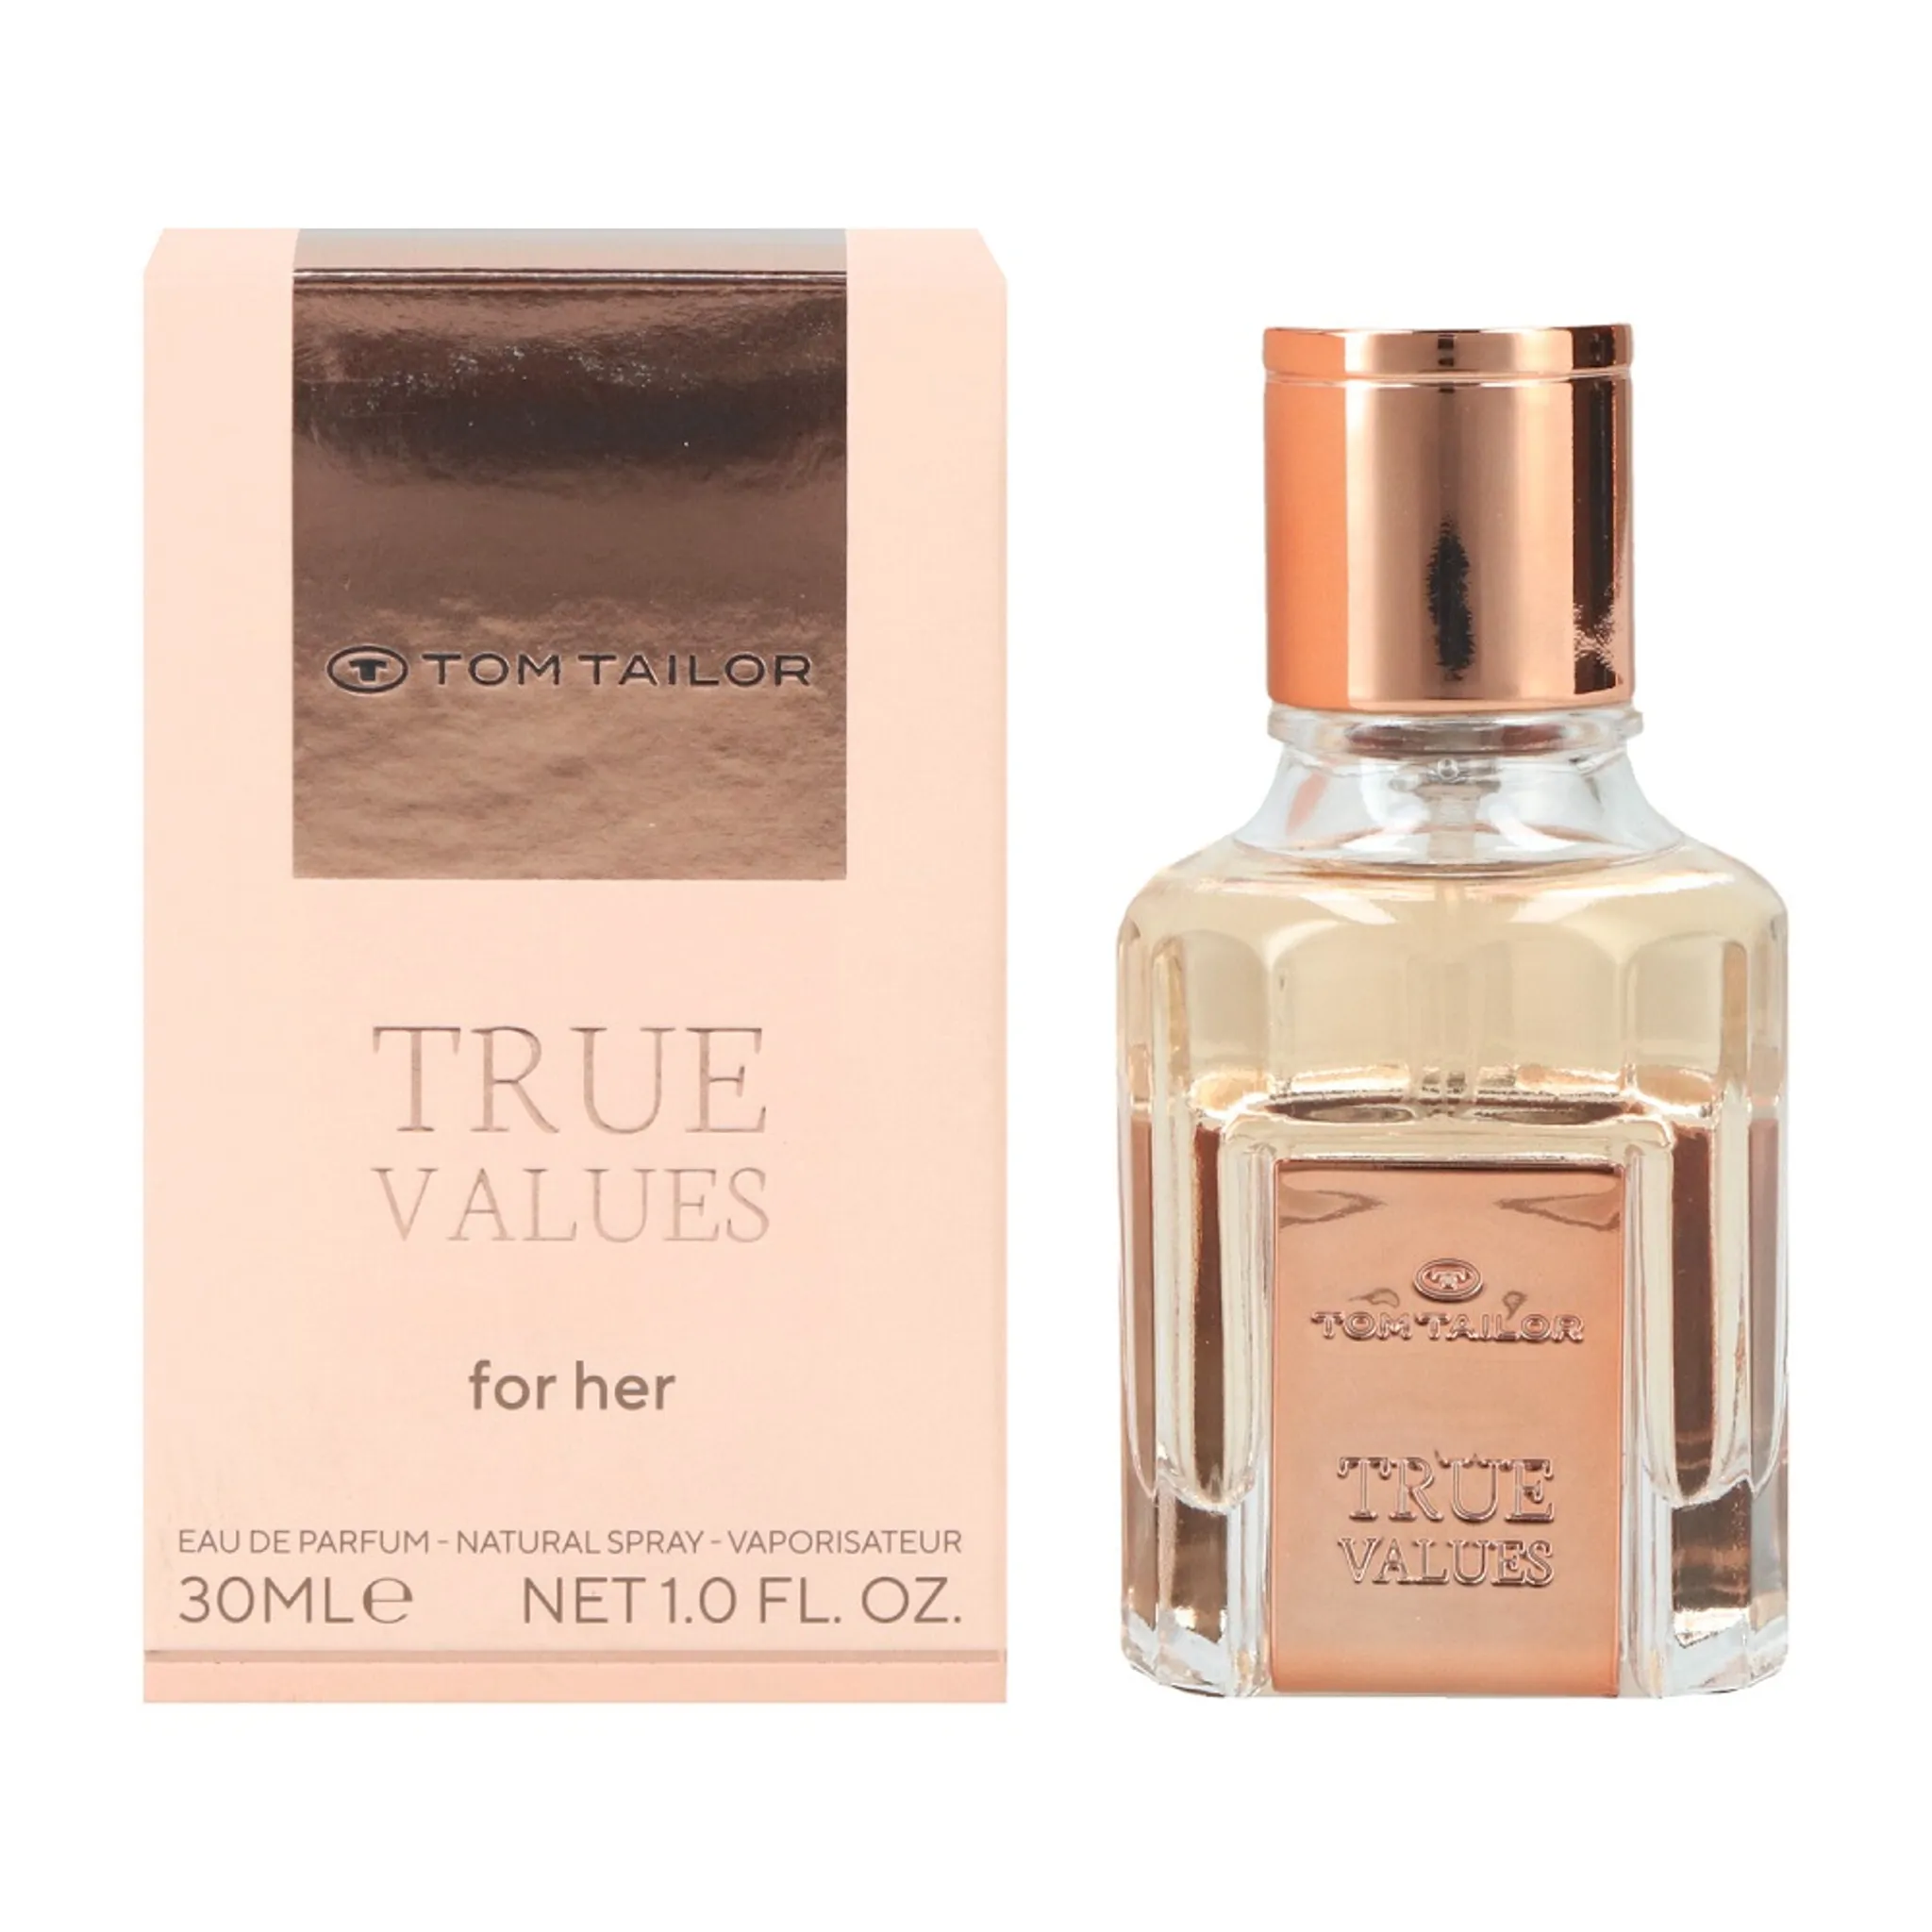 Tom Tailor Her for True Parfum Values Eau de